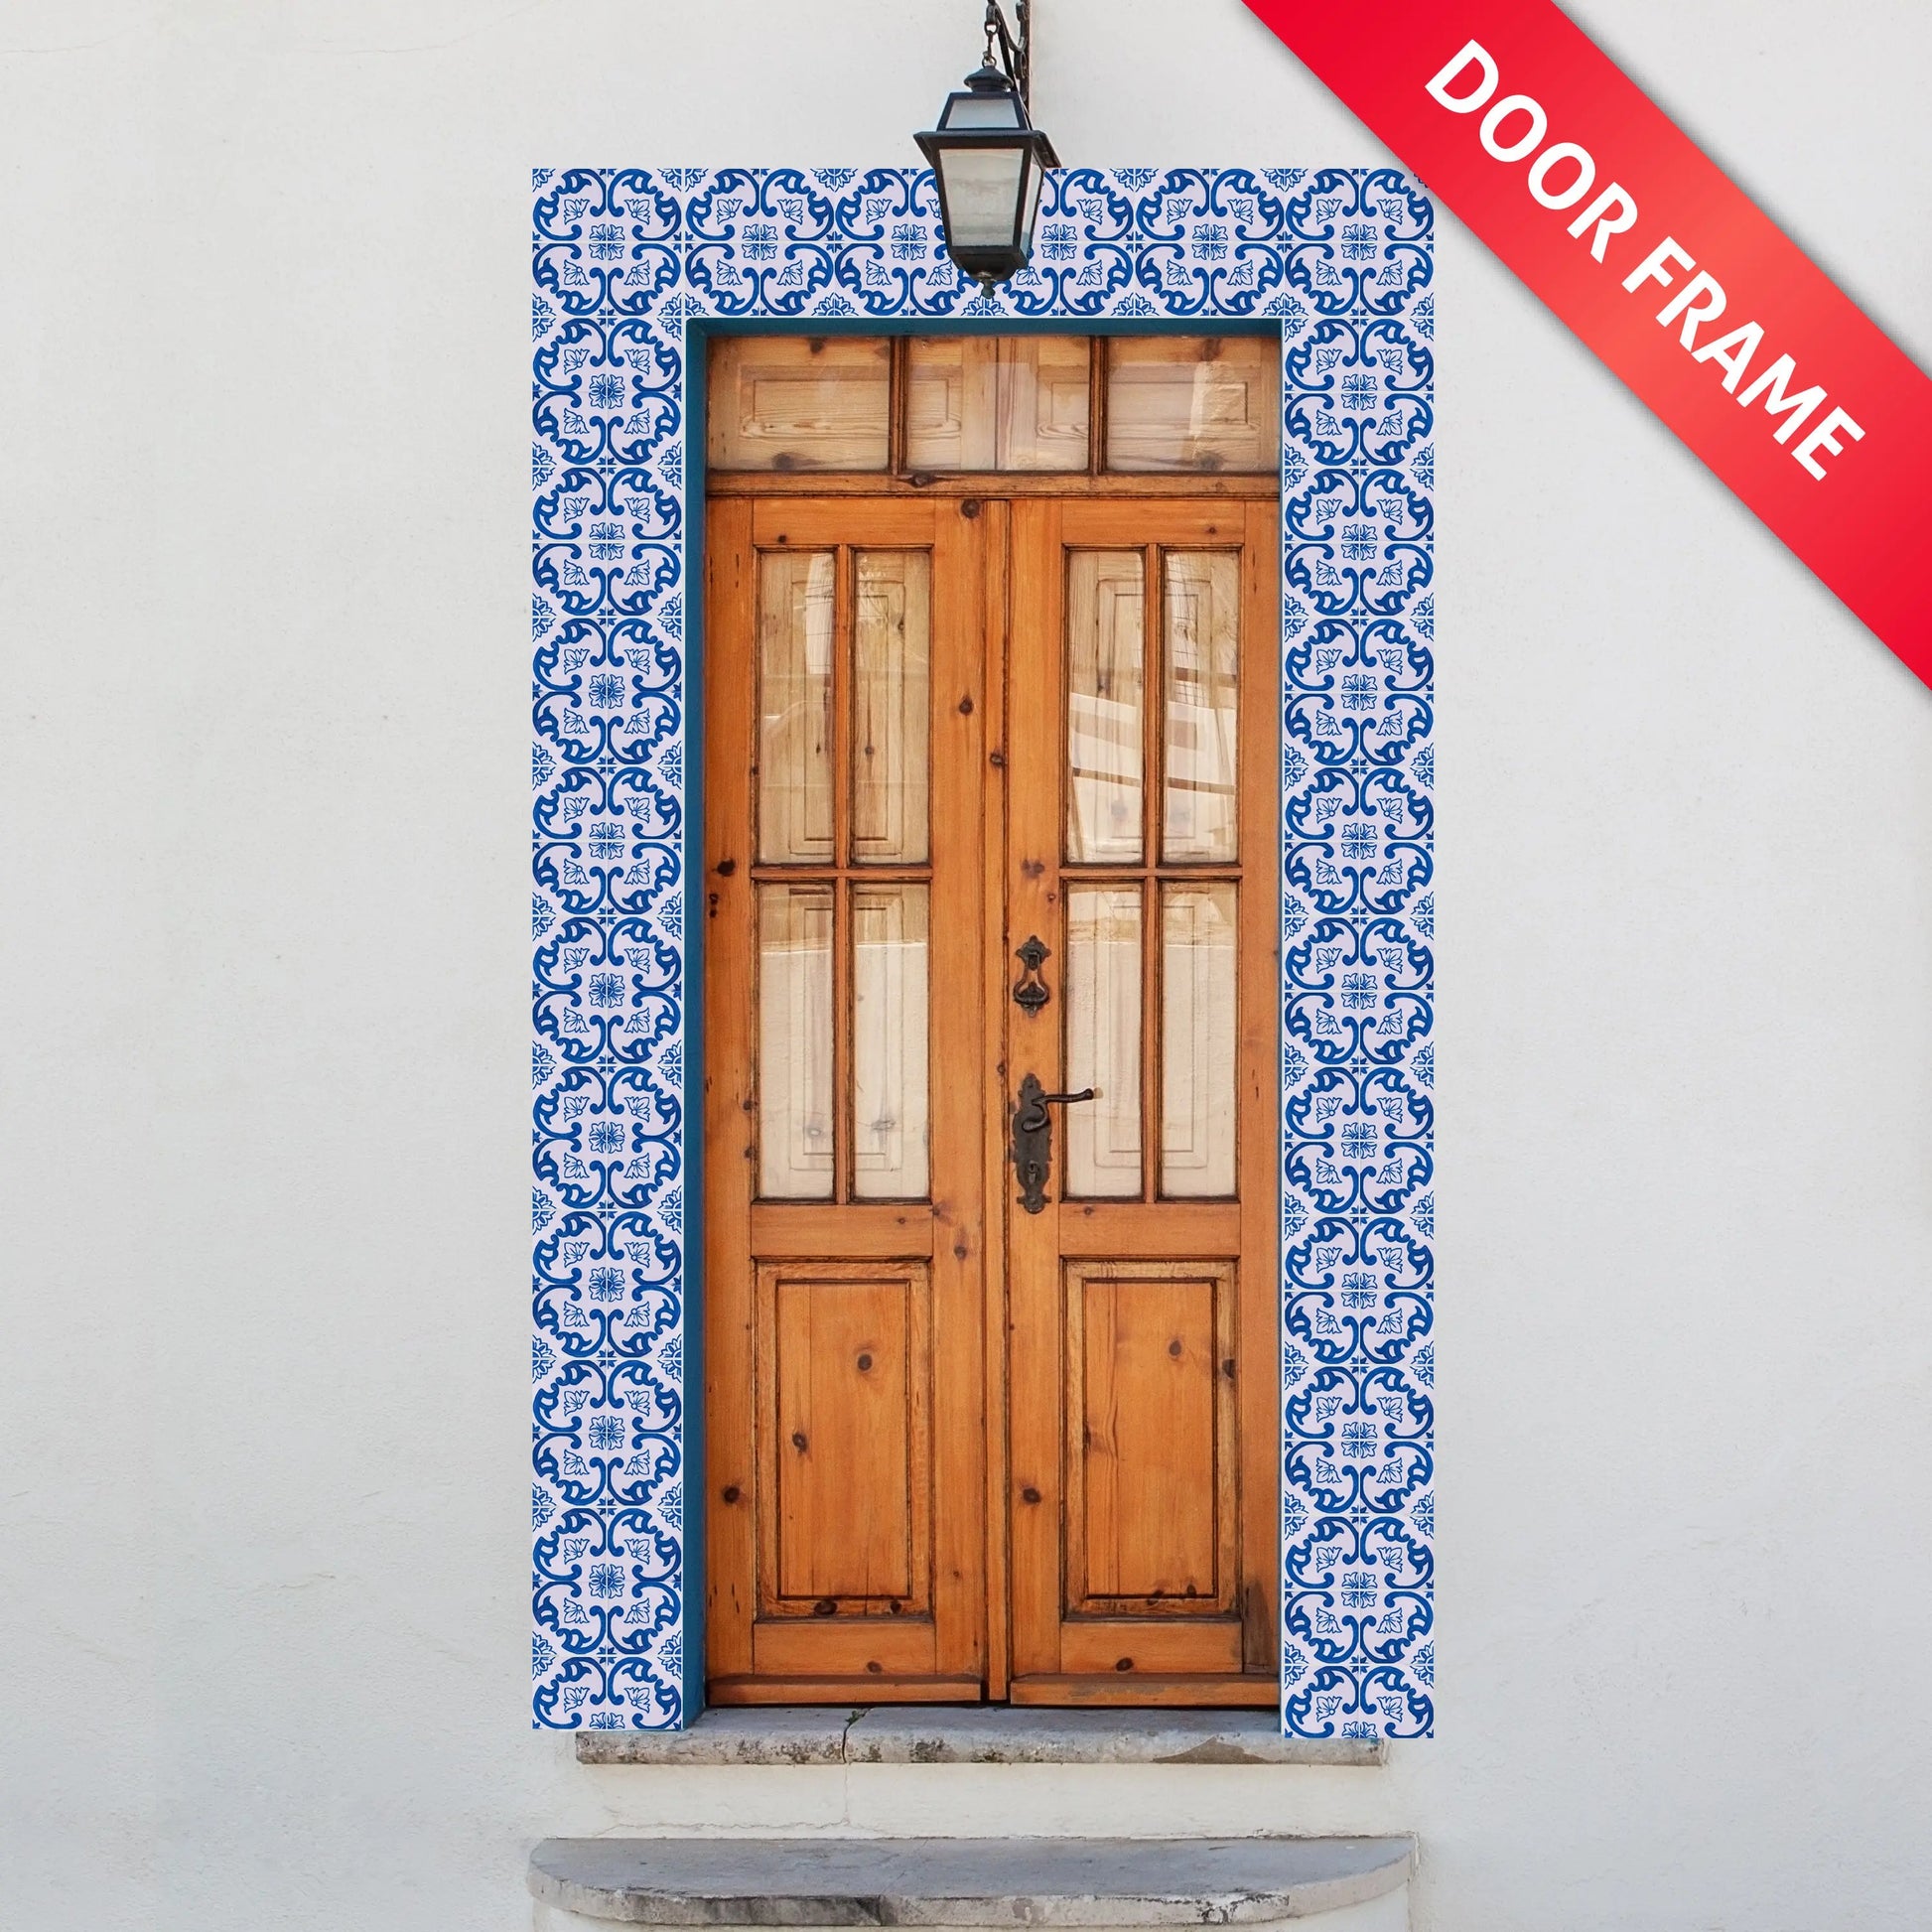 Portuguese Inspired Azulejos Nova Casa Blue Ceramic Tile Door frame-Rooster Camisa 